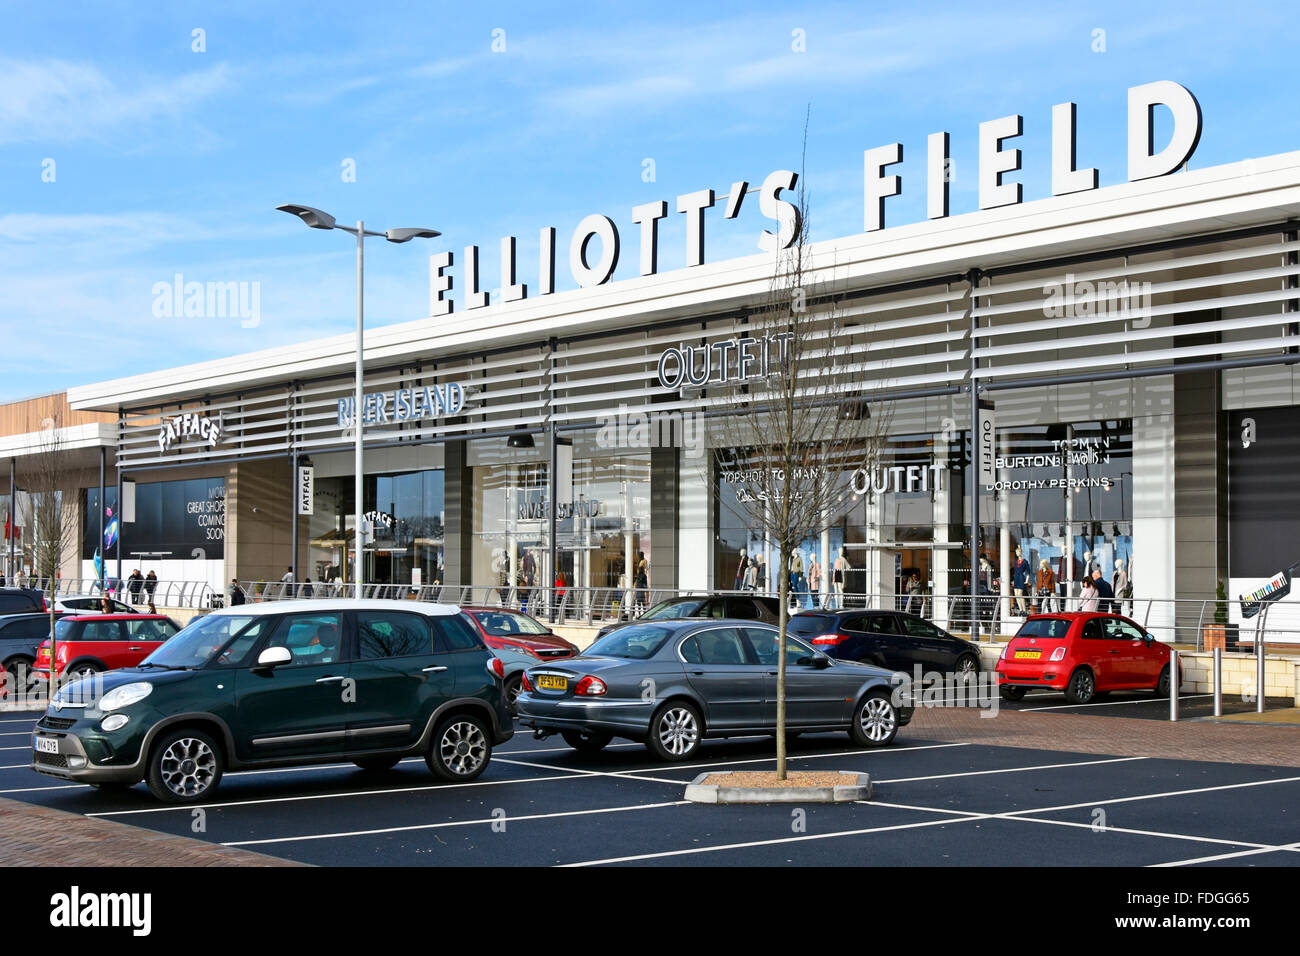 Shopping invernale a Elliotts Field moderno centro commerciale al dettaglio parco business sviluppo posti auto gratuiti a Rugby Warwickshire Inghilterra Regno Unito Foto Stock